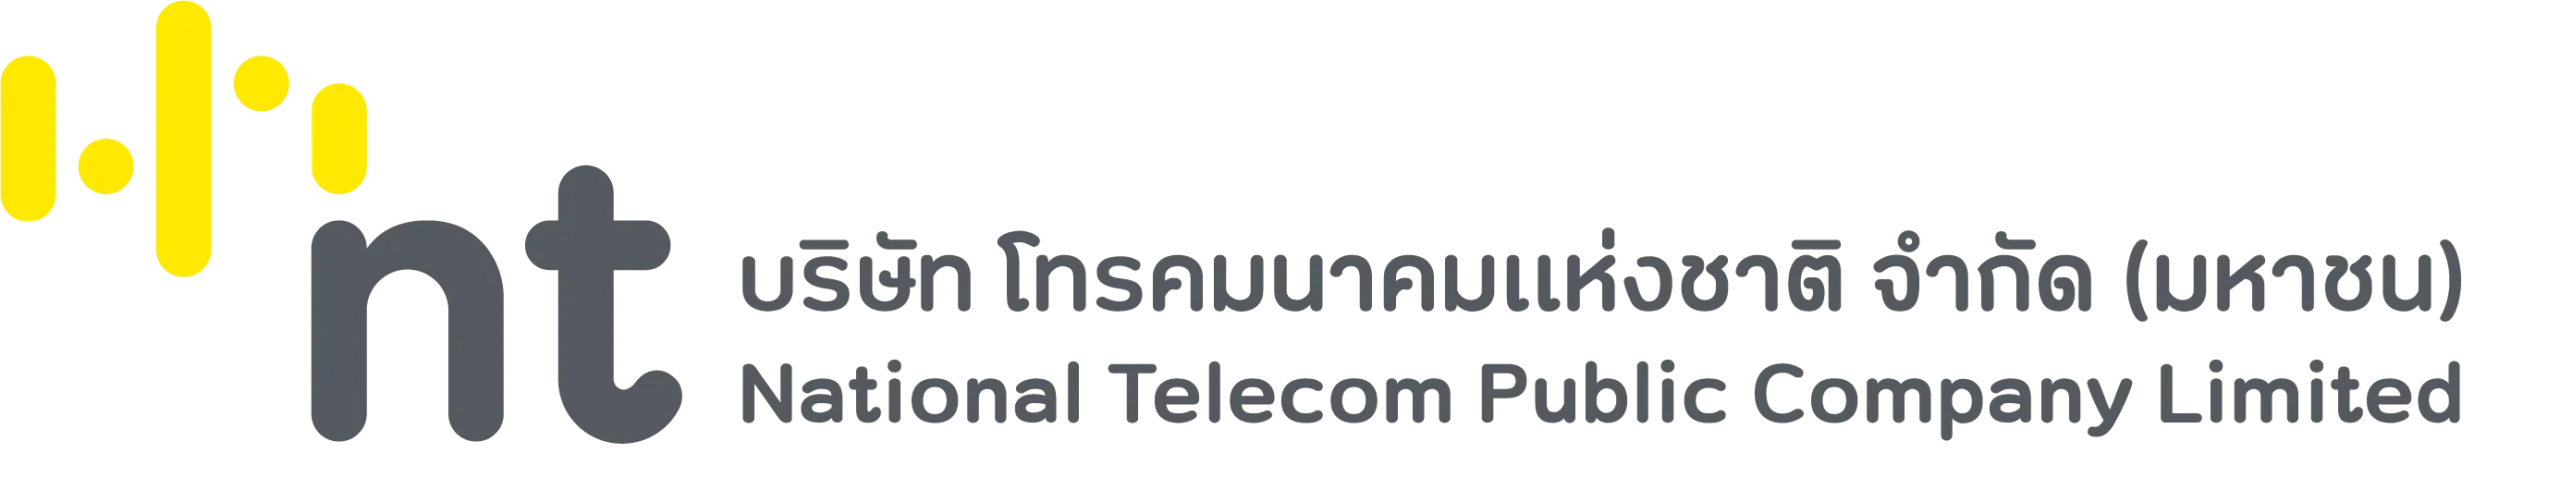 บริษัท โทรคมนาคมแห่งชาติ จำกัด (มหาชน)  National Telecom Public Co., Ltd.